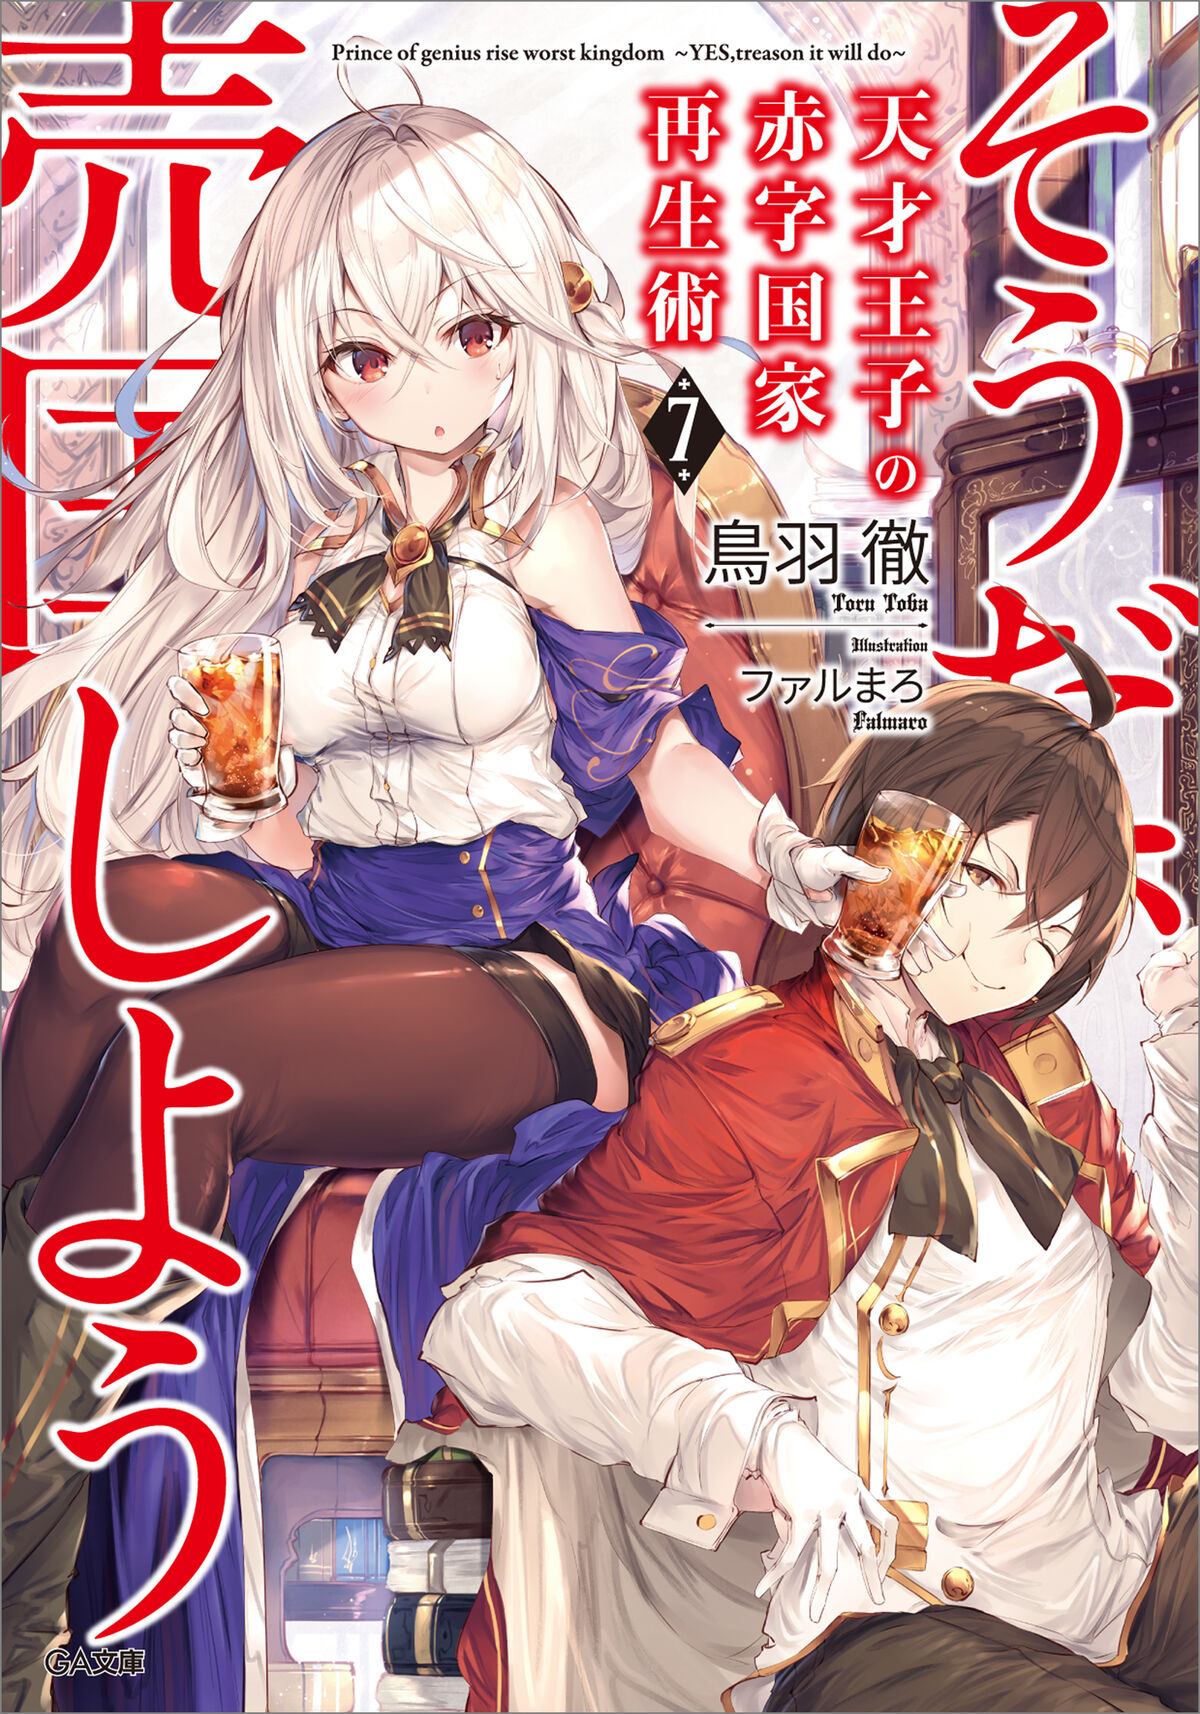 Light Novel Volume 2, Tensai Ouji no Akaji Wiki